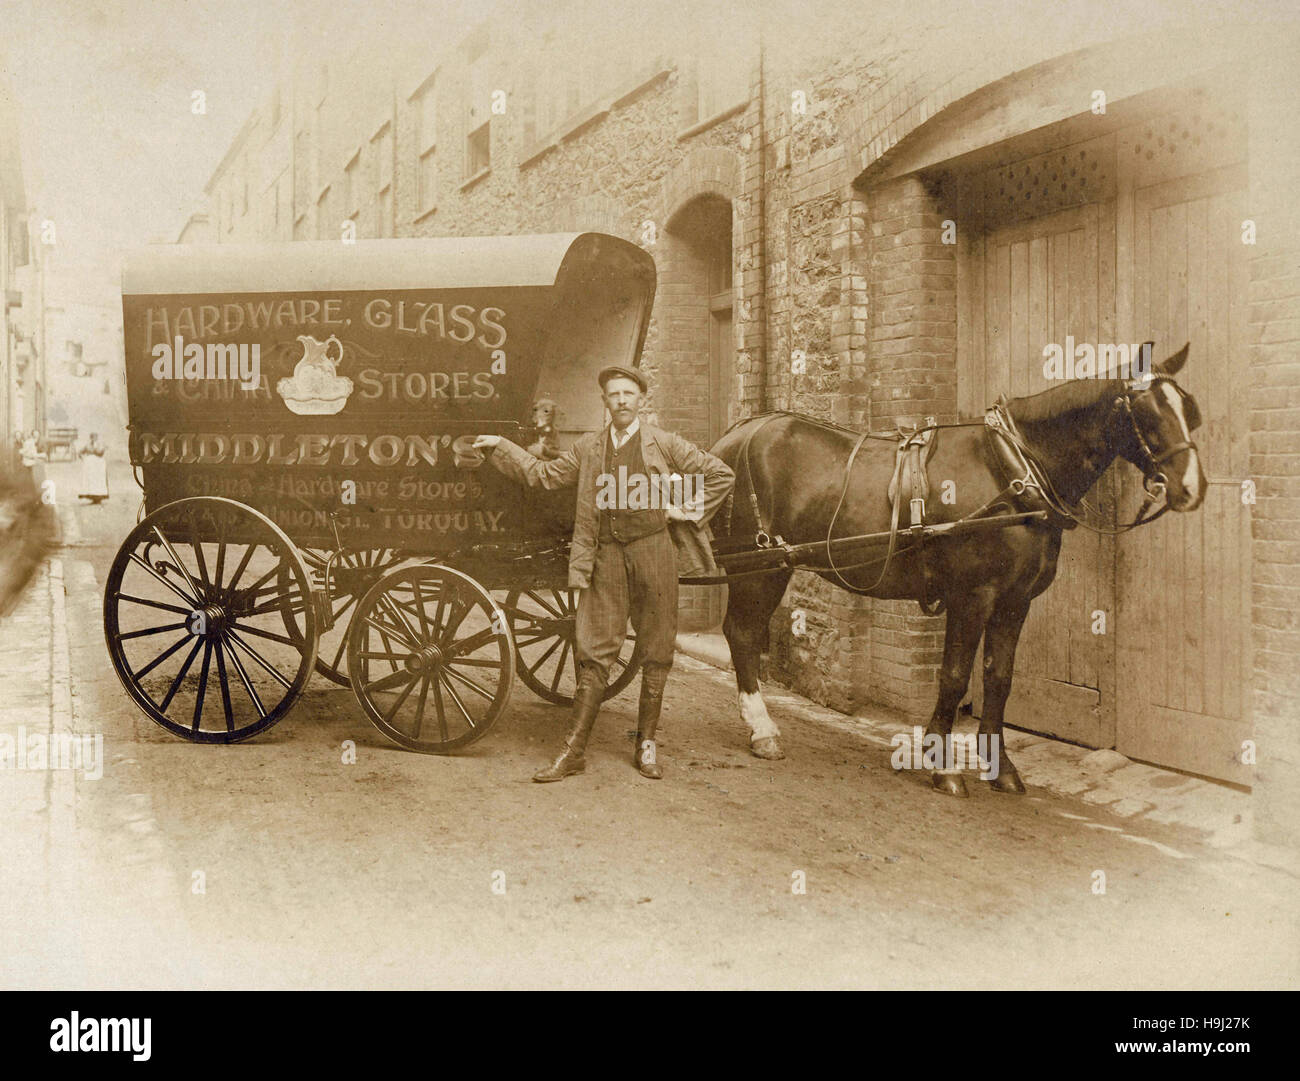 Archivio Storico di immagine di uomo a cavallo e carro pubblicità Hardware, vetro e negozi in Cina dettagliante di Torquay, Devon. c1900 Foto Stock